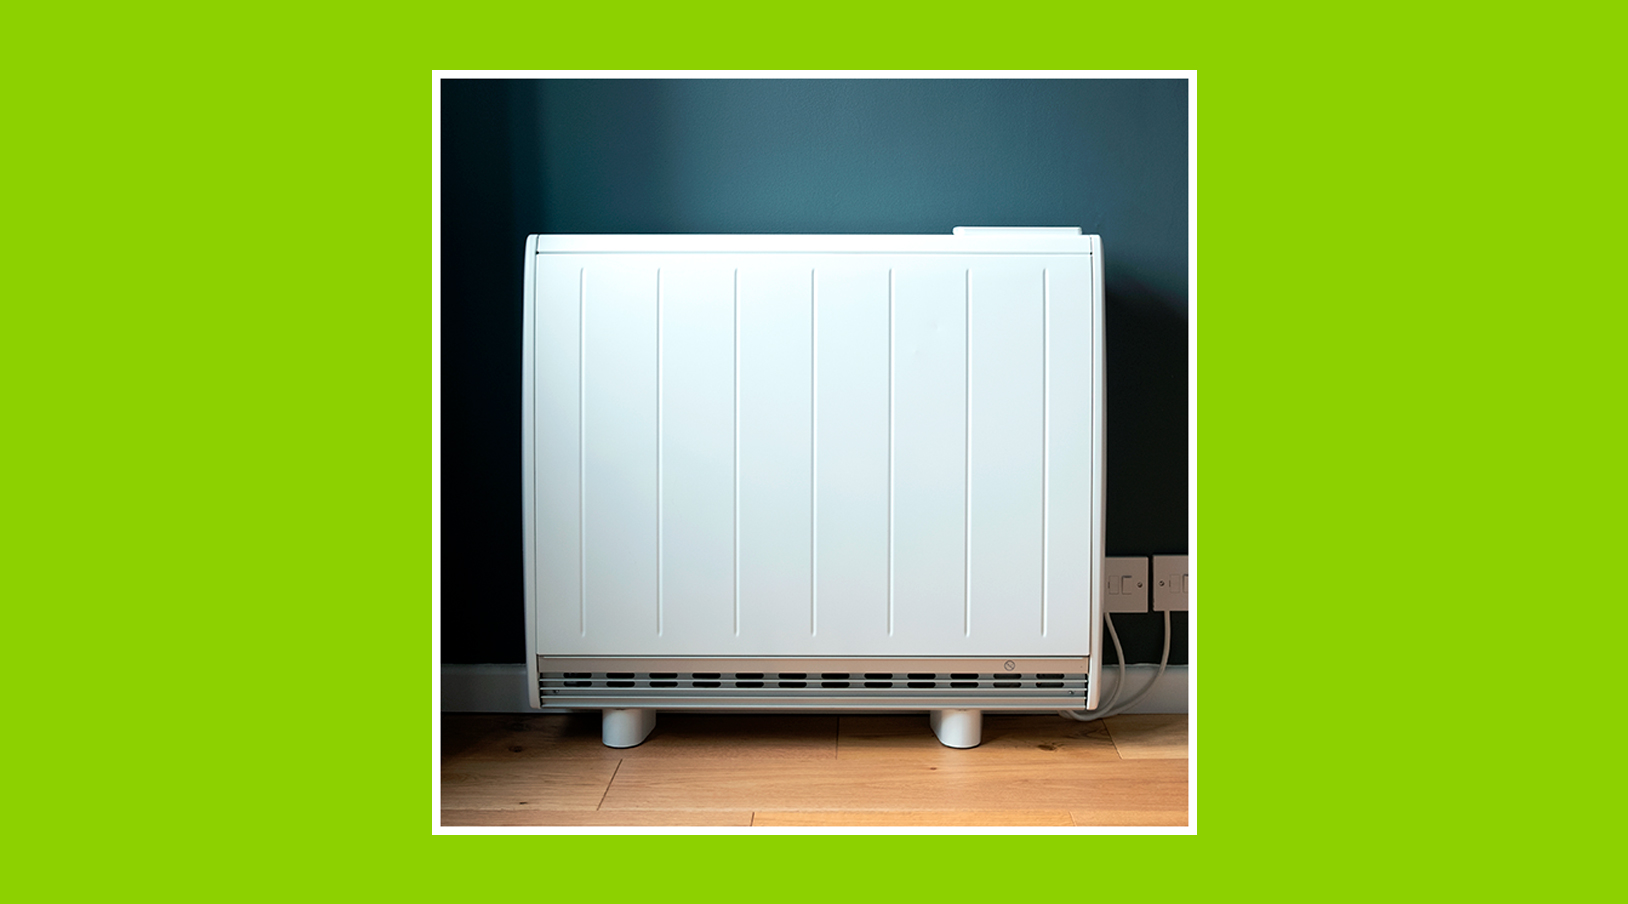 Emisor térmico para ahorrar electricidad en tu hogar